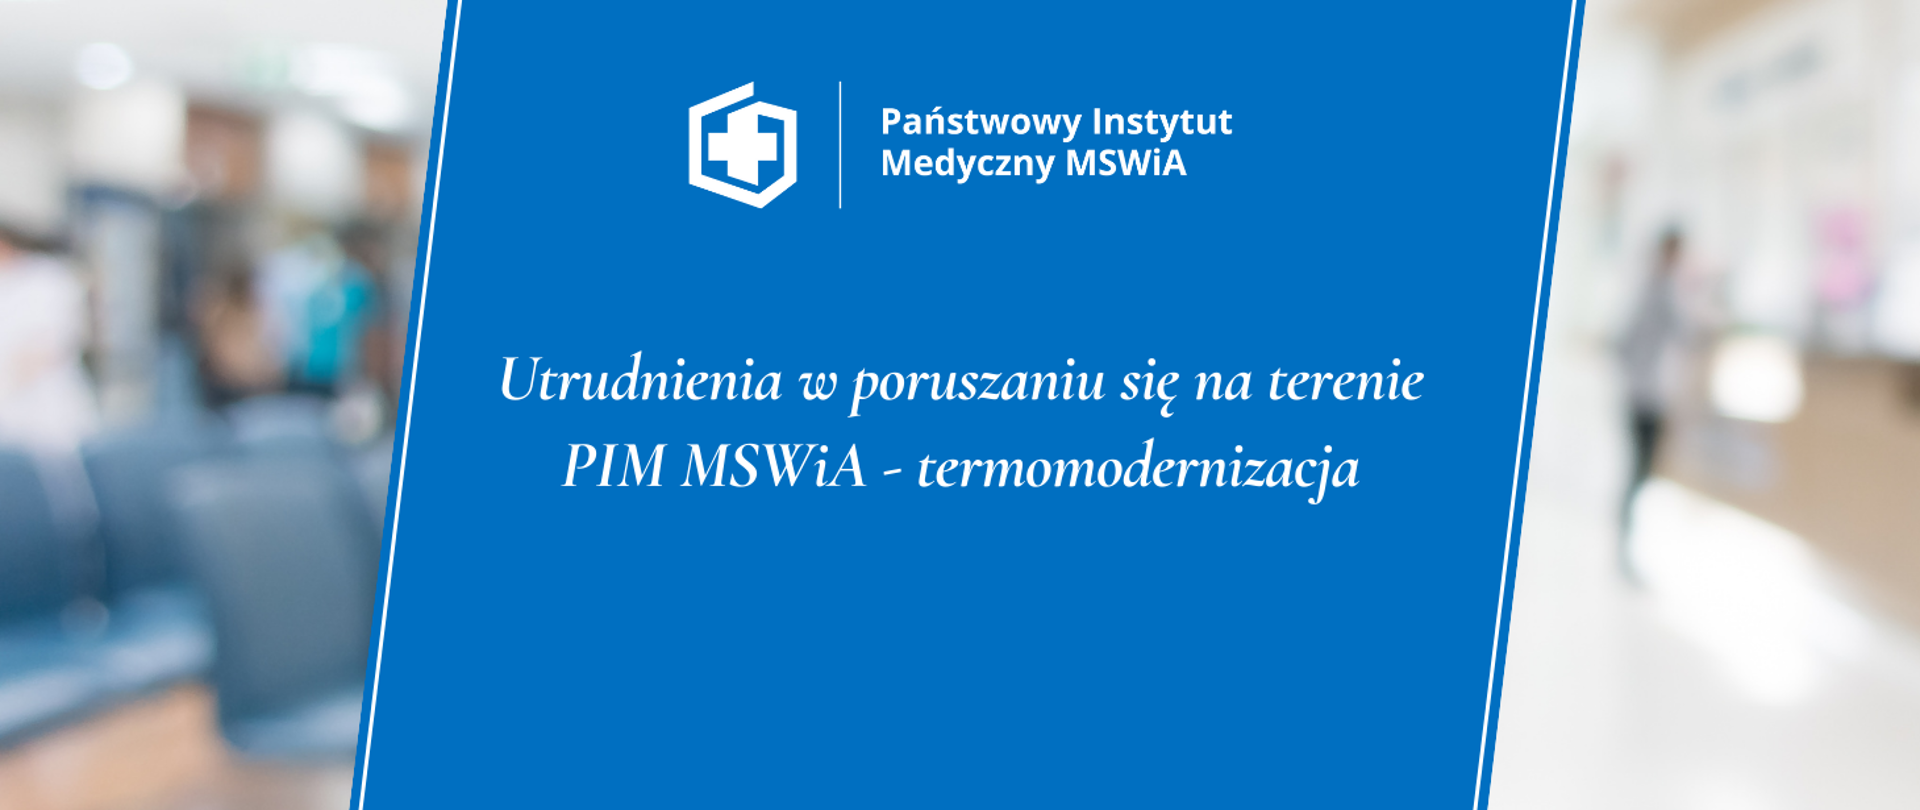 Utrudnienia w poruszaniu się na terenie PIM MSWiA - termomodernizacja